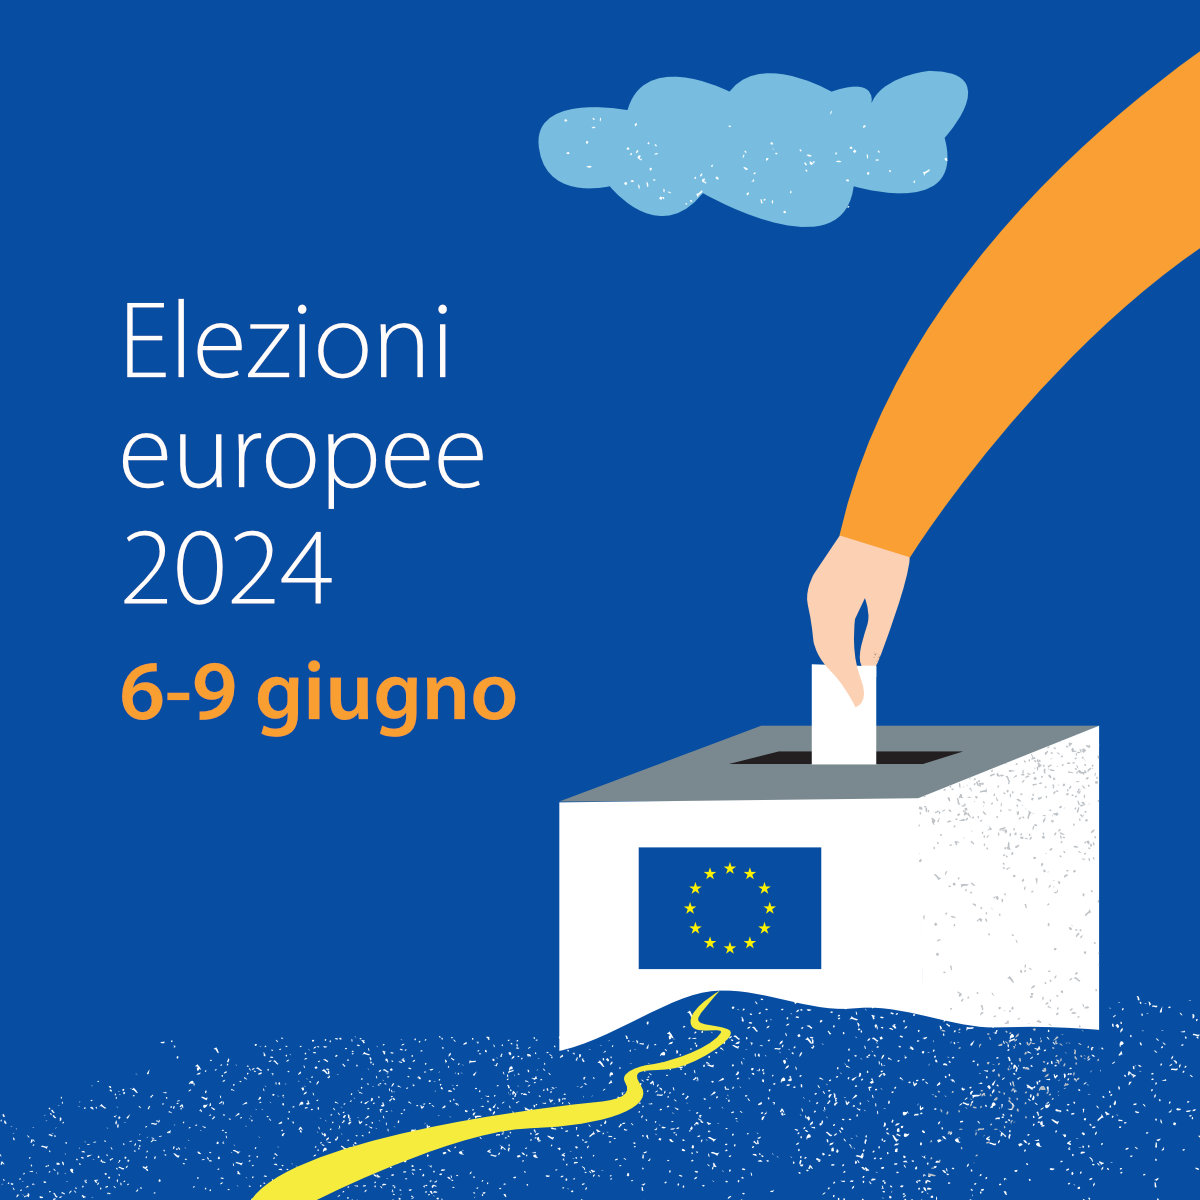 Elezioni europee 2024 - Square